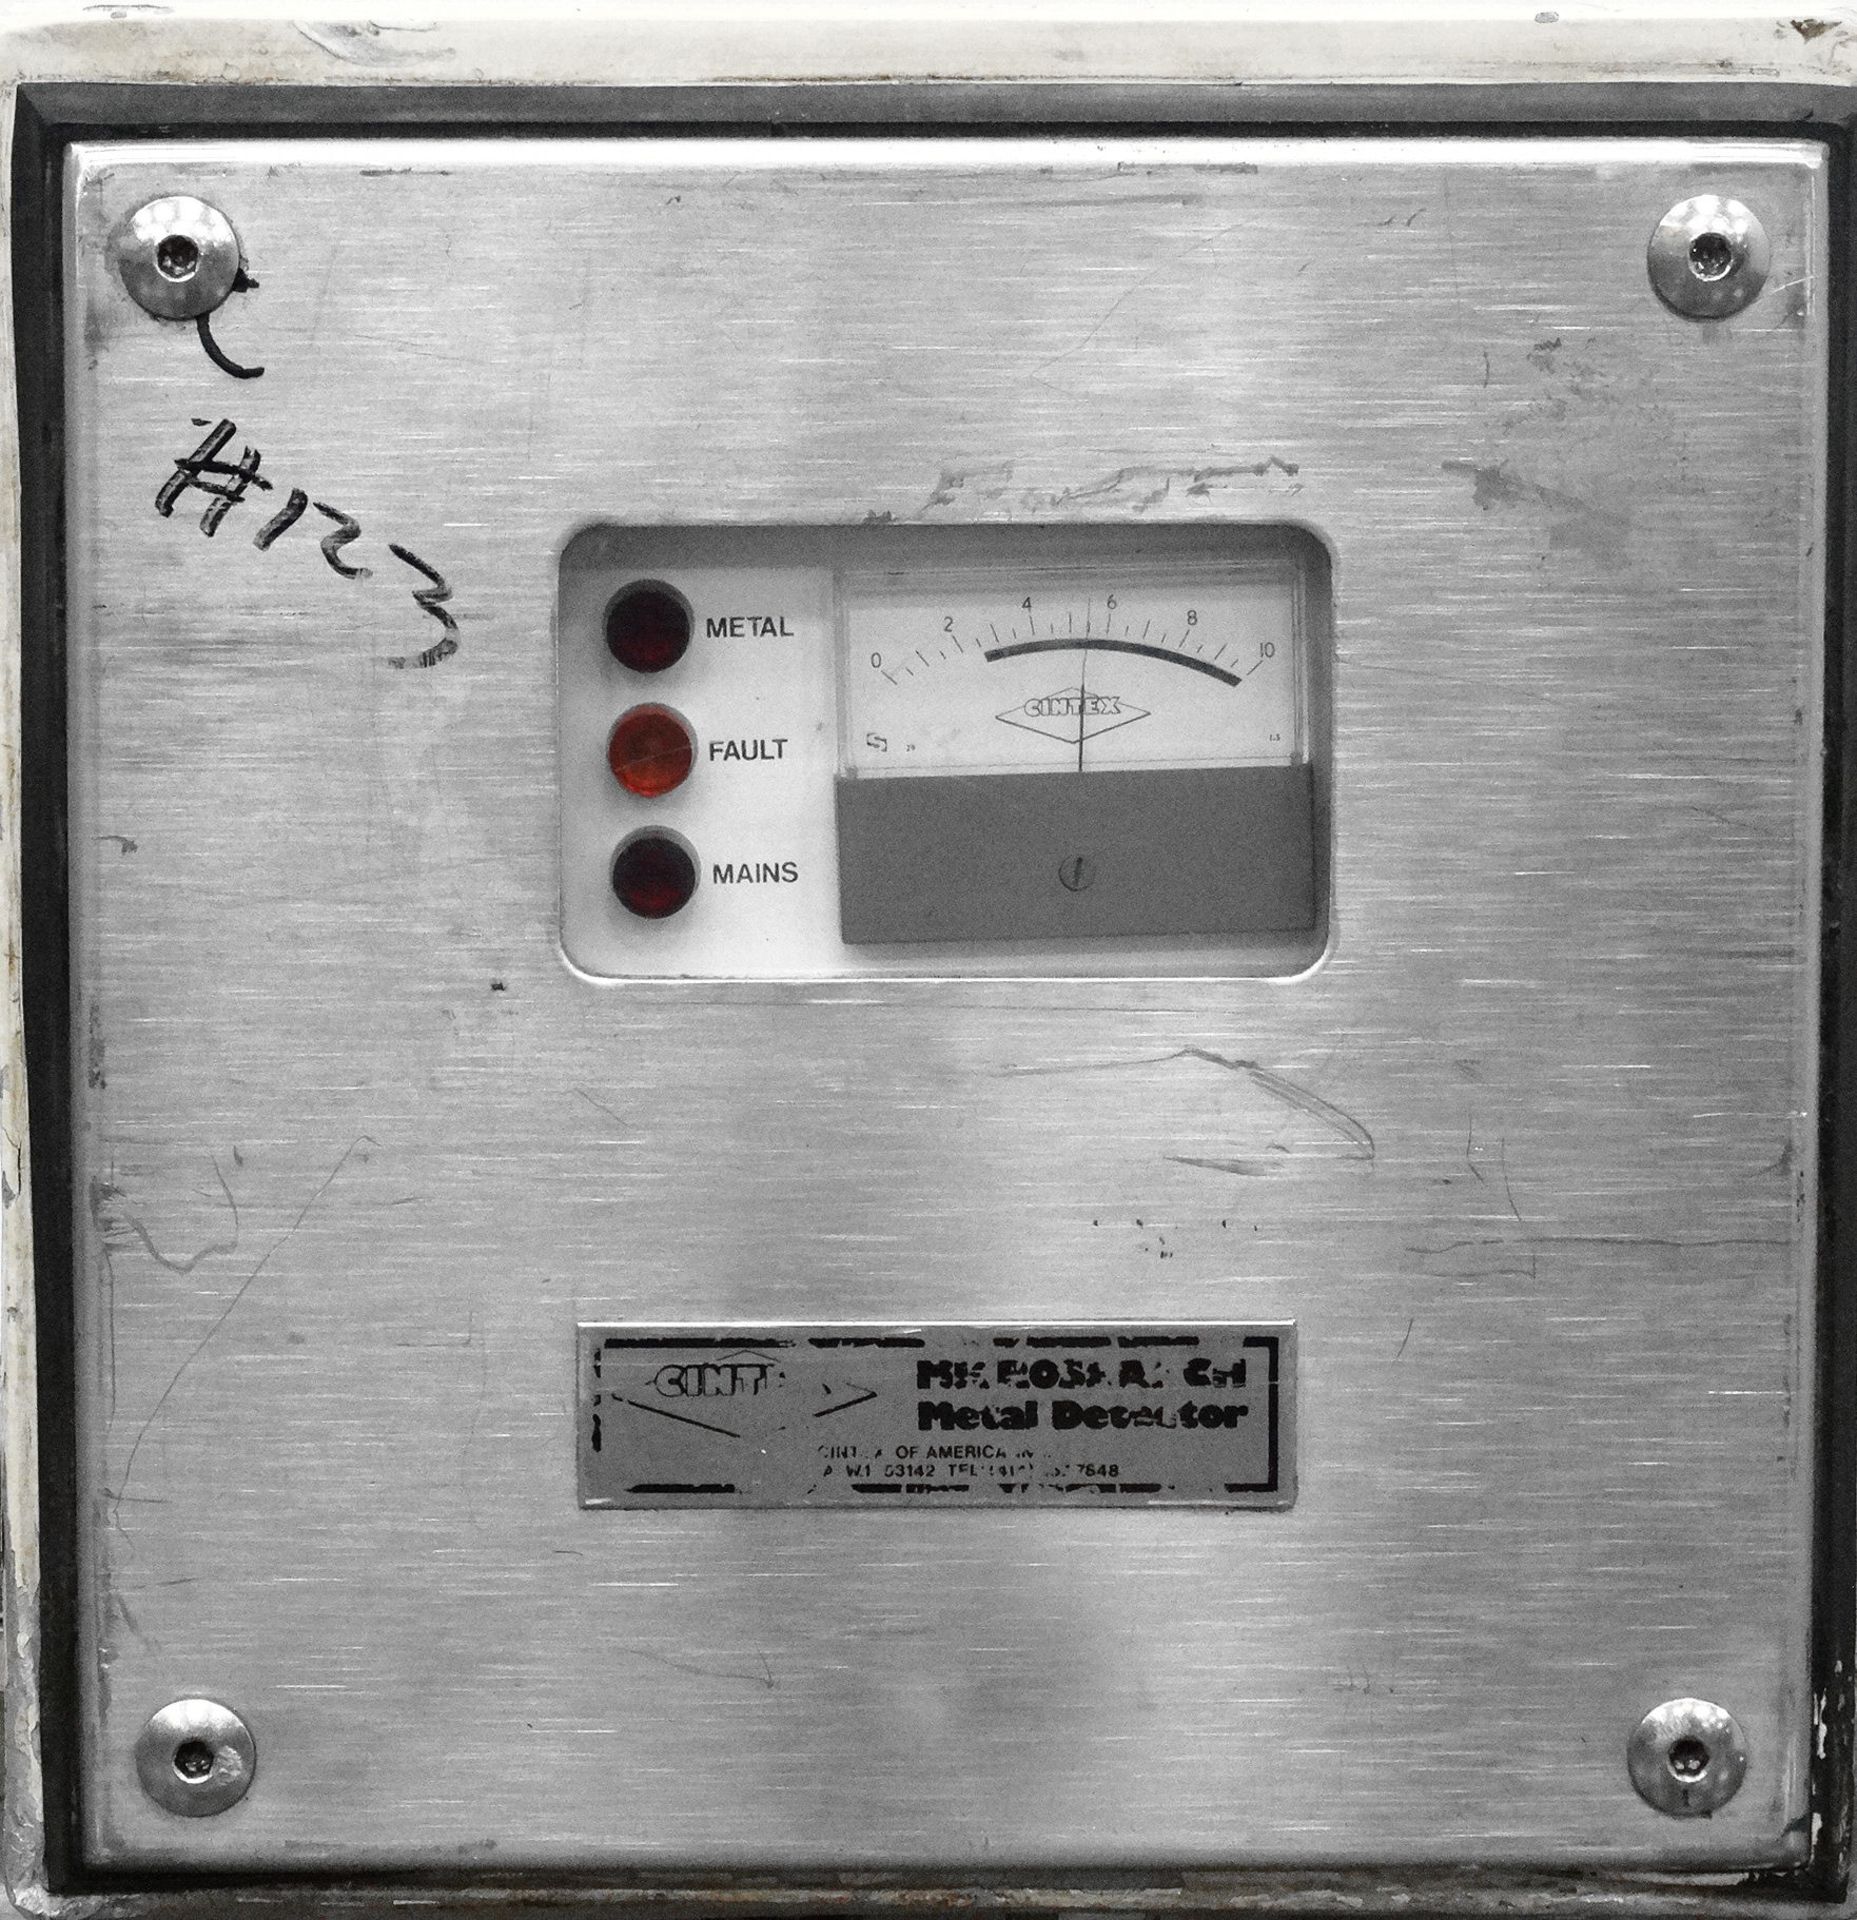 Loma Cintex Metal Detector 9" W x 4" T Aperture - Image 8 of 8